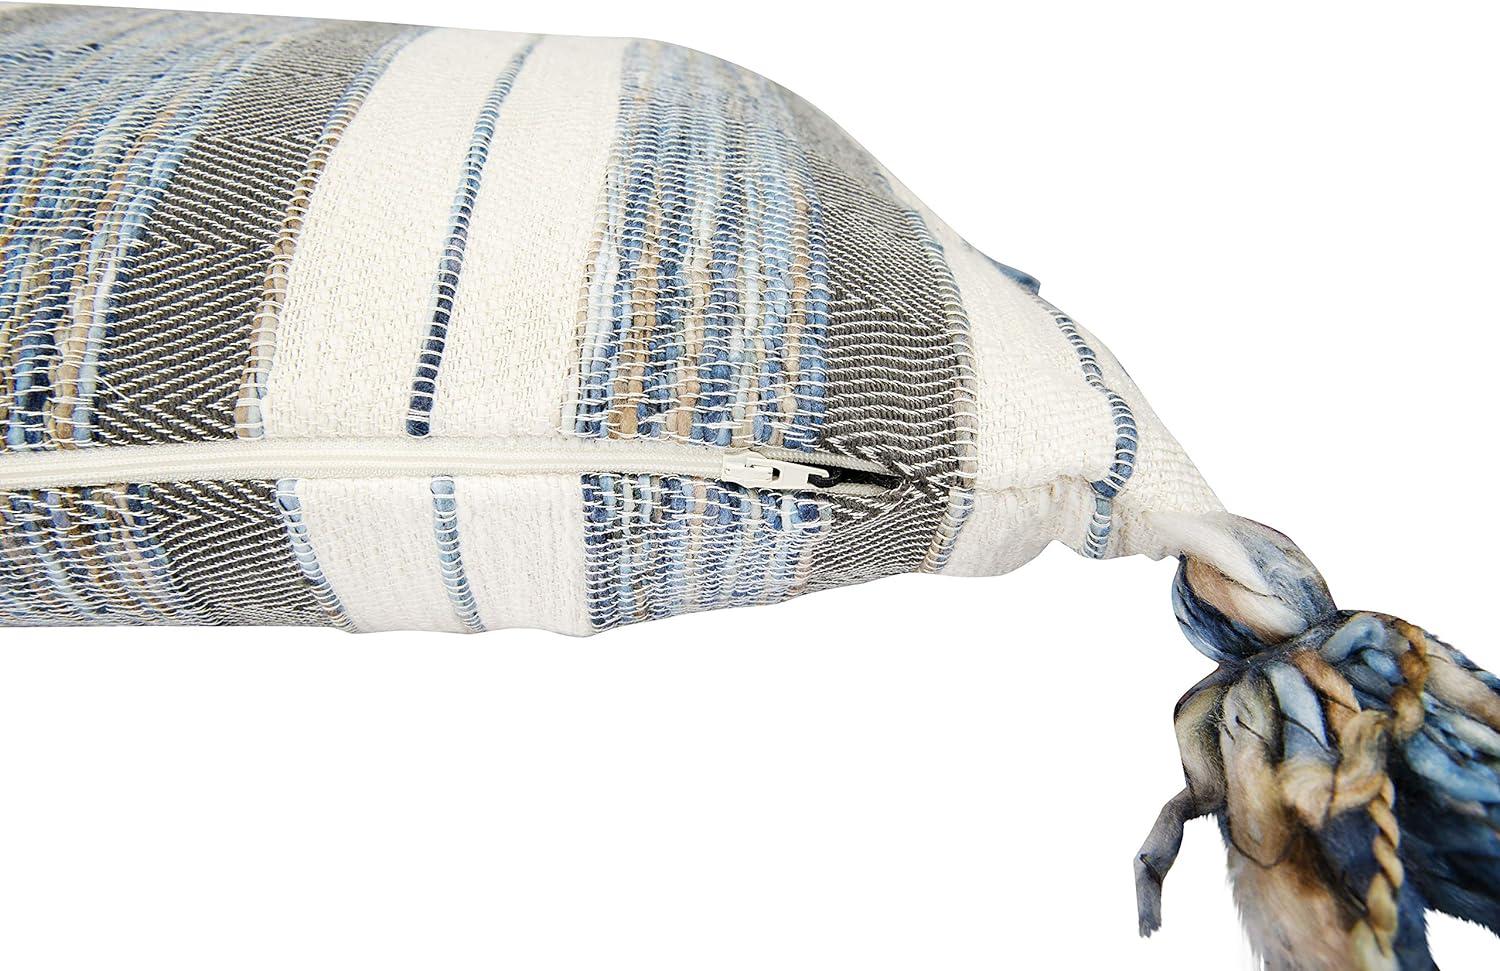 Modern Blue & Grey Striped Cotton Blend Lumbar Pillow with Tassels, 36" x 16"